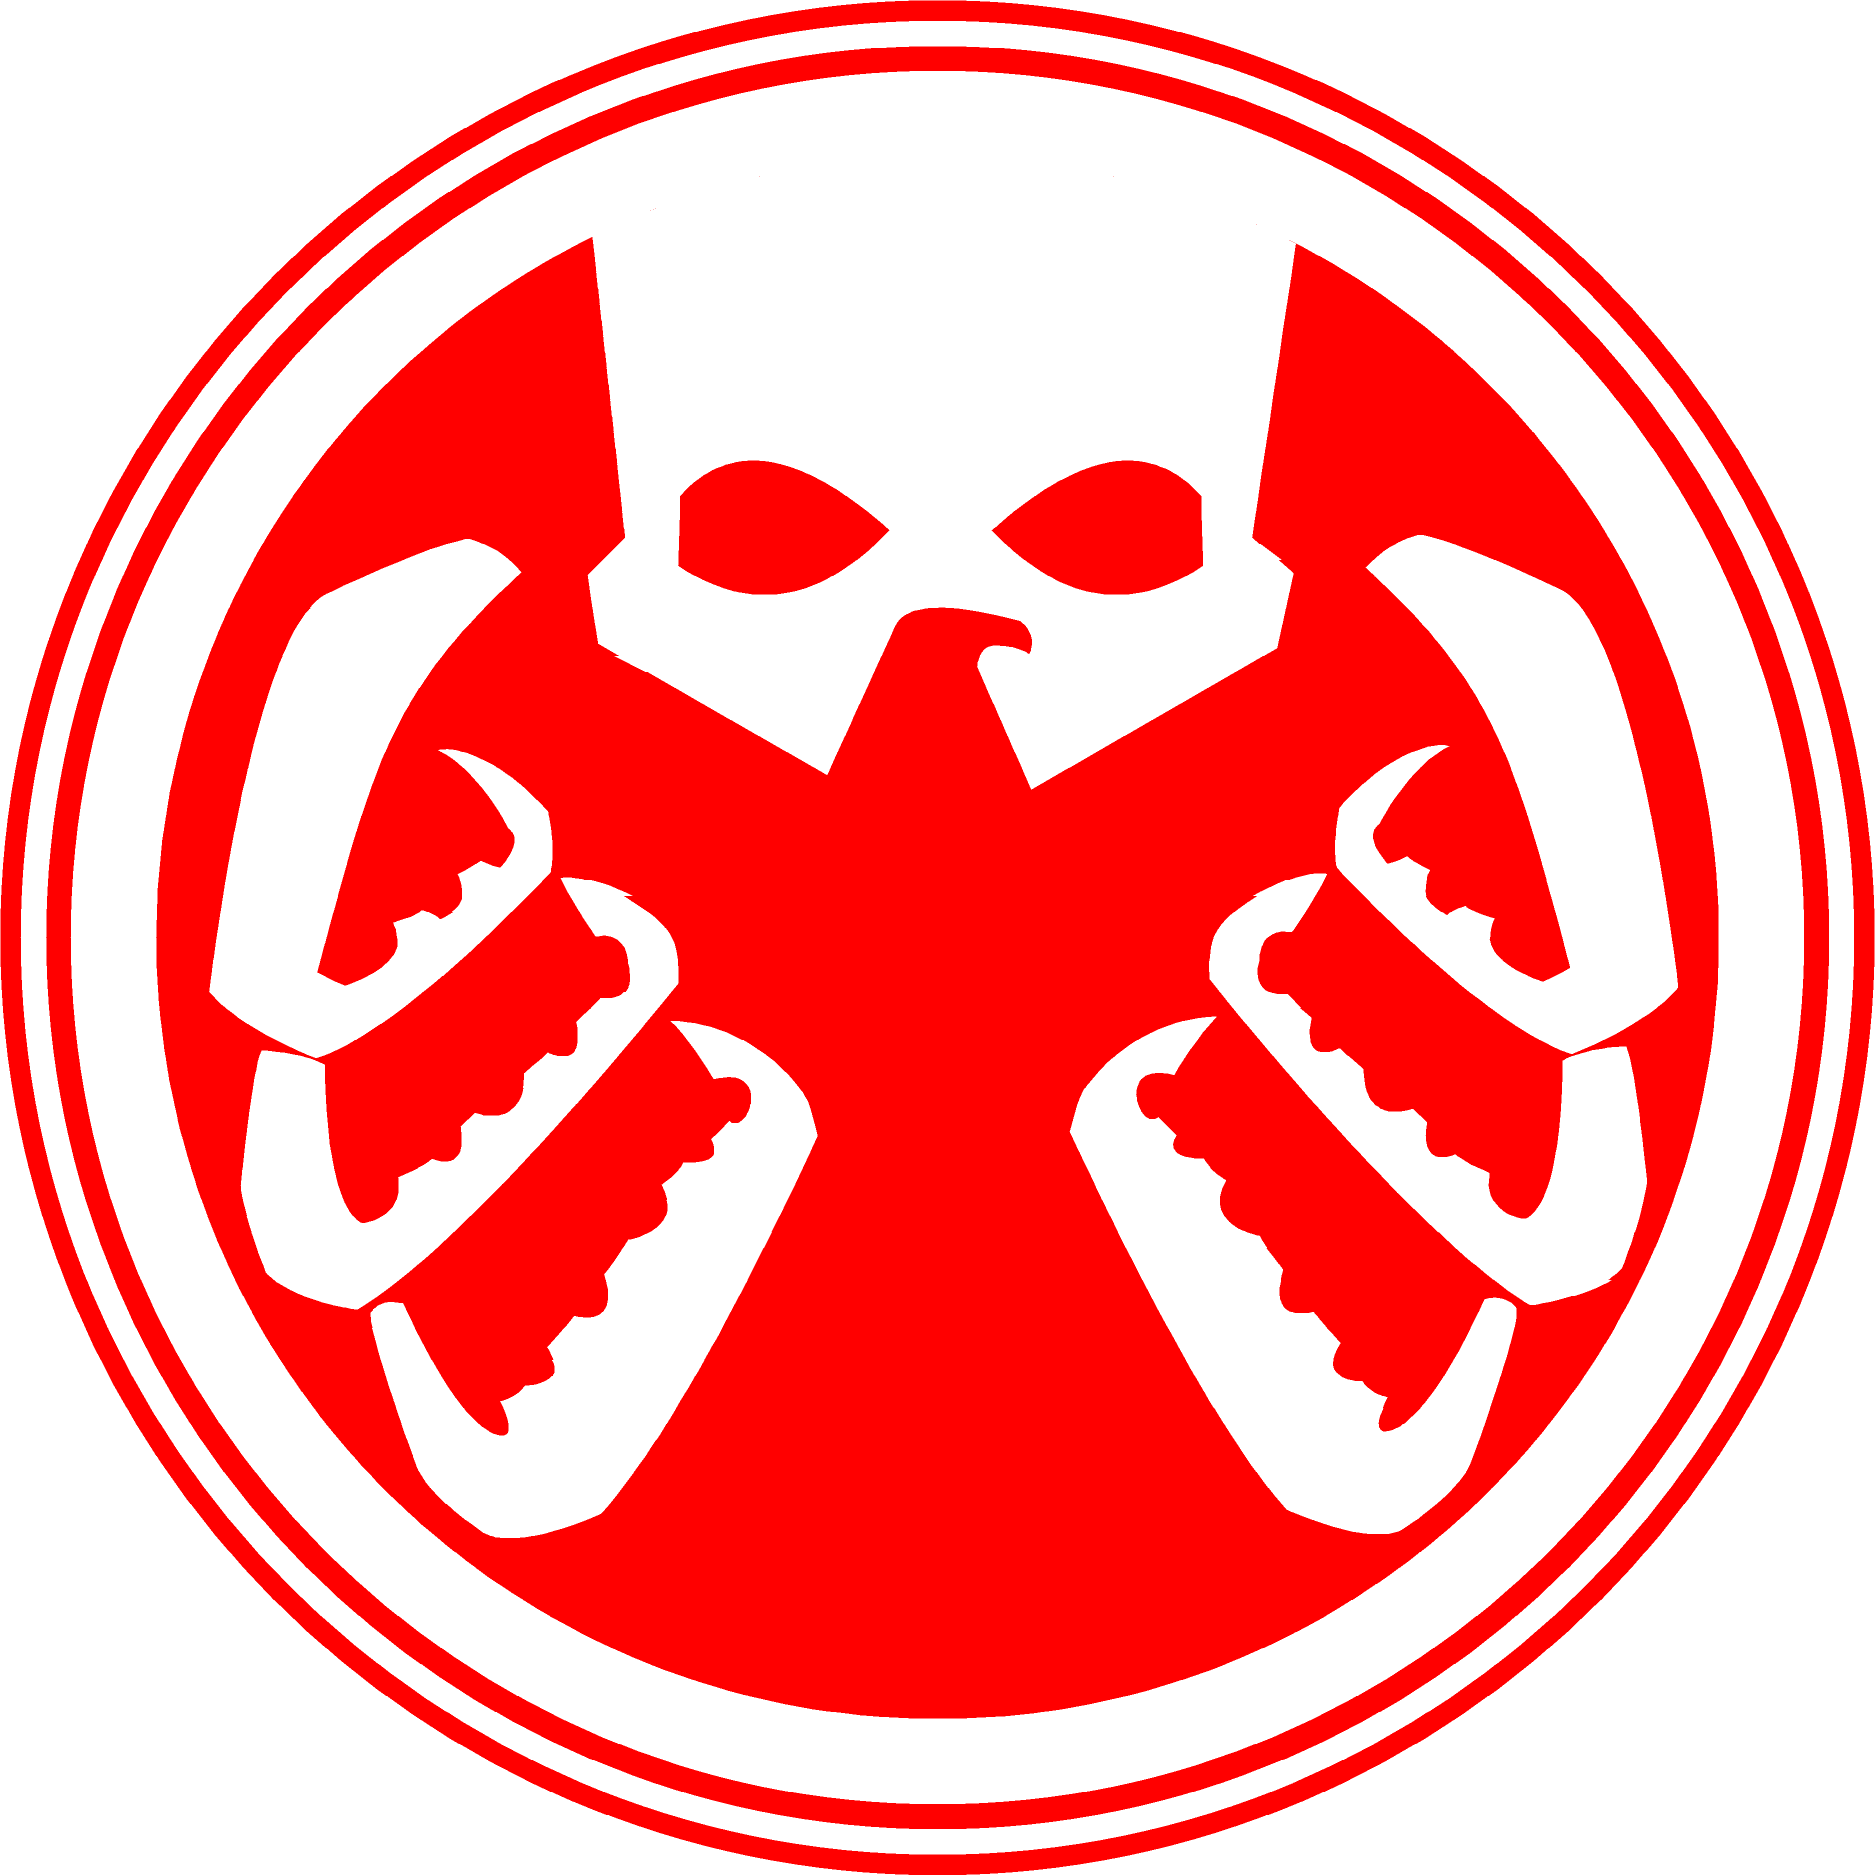 hydra logo